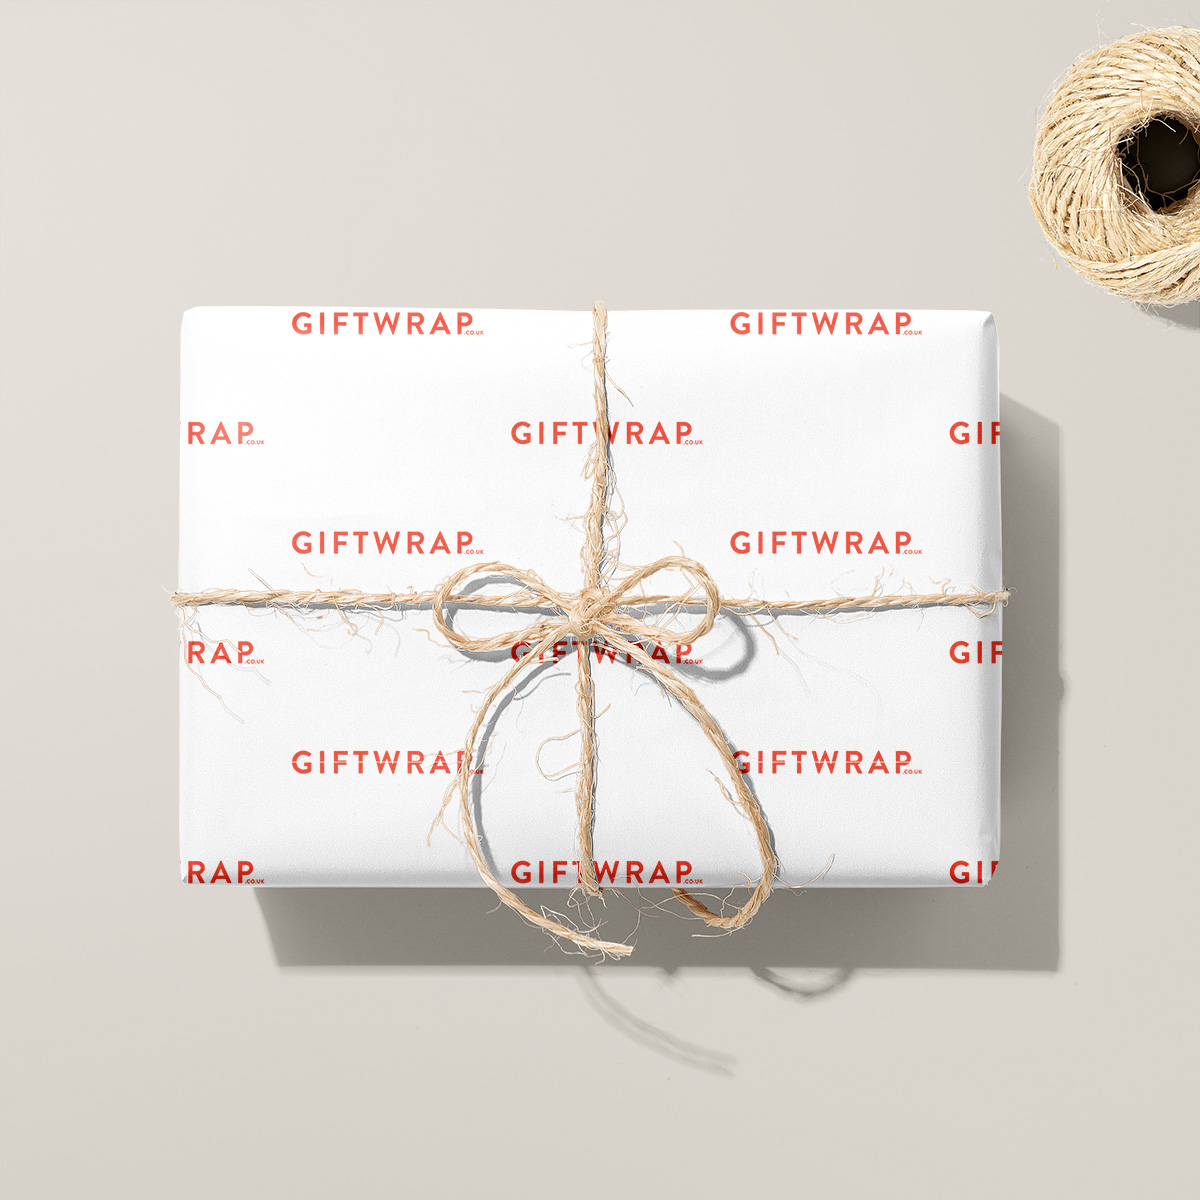 Luxury Bespoke Giftwrap